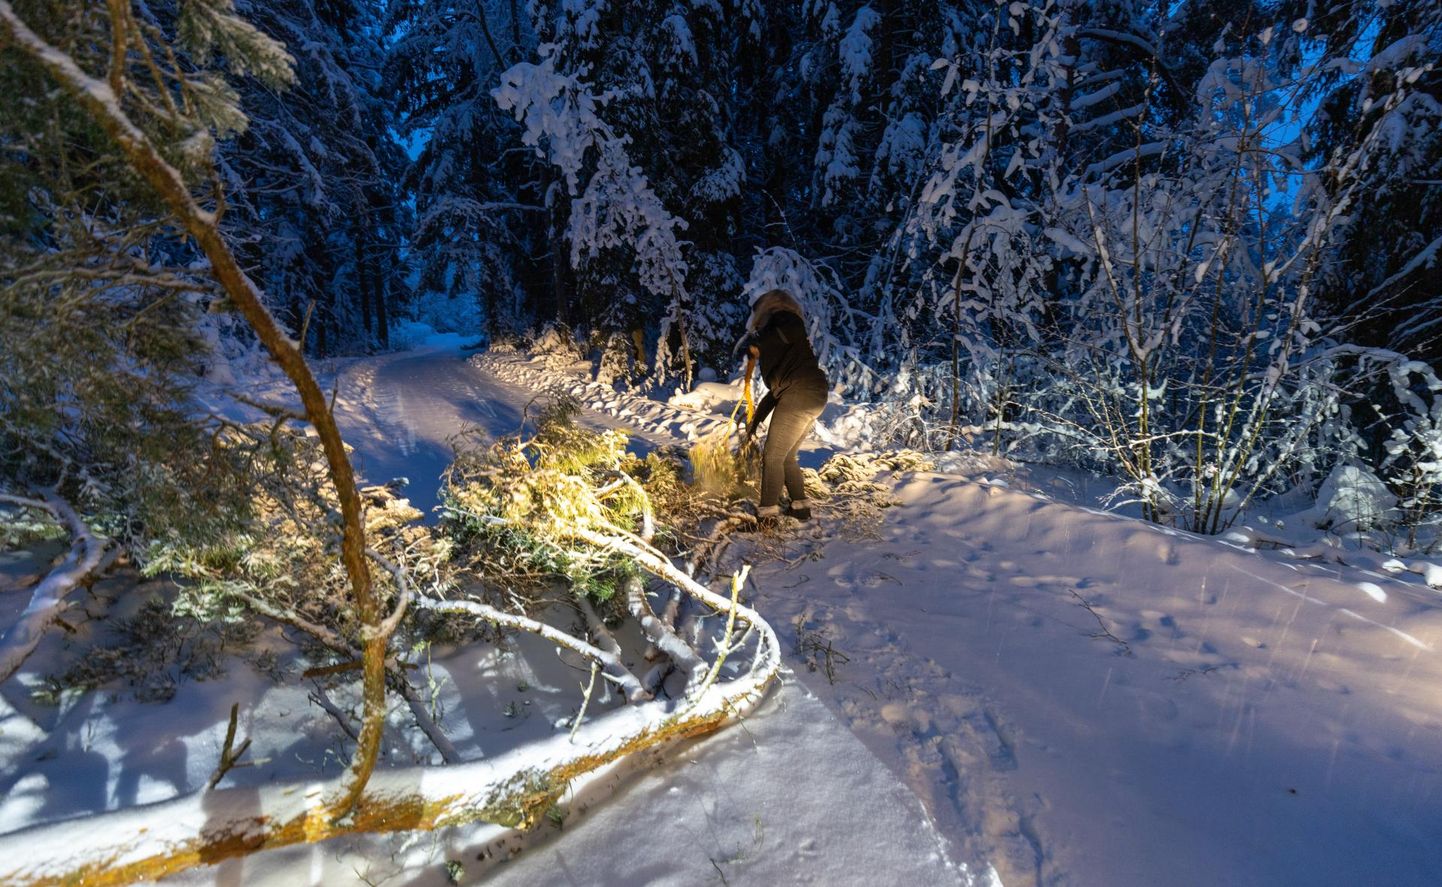 Maale posti viies on kulleril kaasas lumelabidas. Aga kui teele on kukkunud puu, pole sellest kasu. Sel varahommikul tegi kuller külateele sadanud lumele esimesed jäljed ja toimetas teelt eest sinna langenud männi.